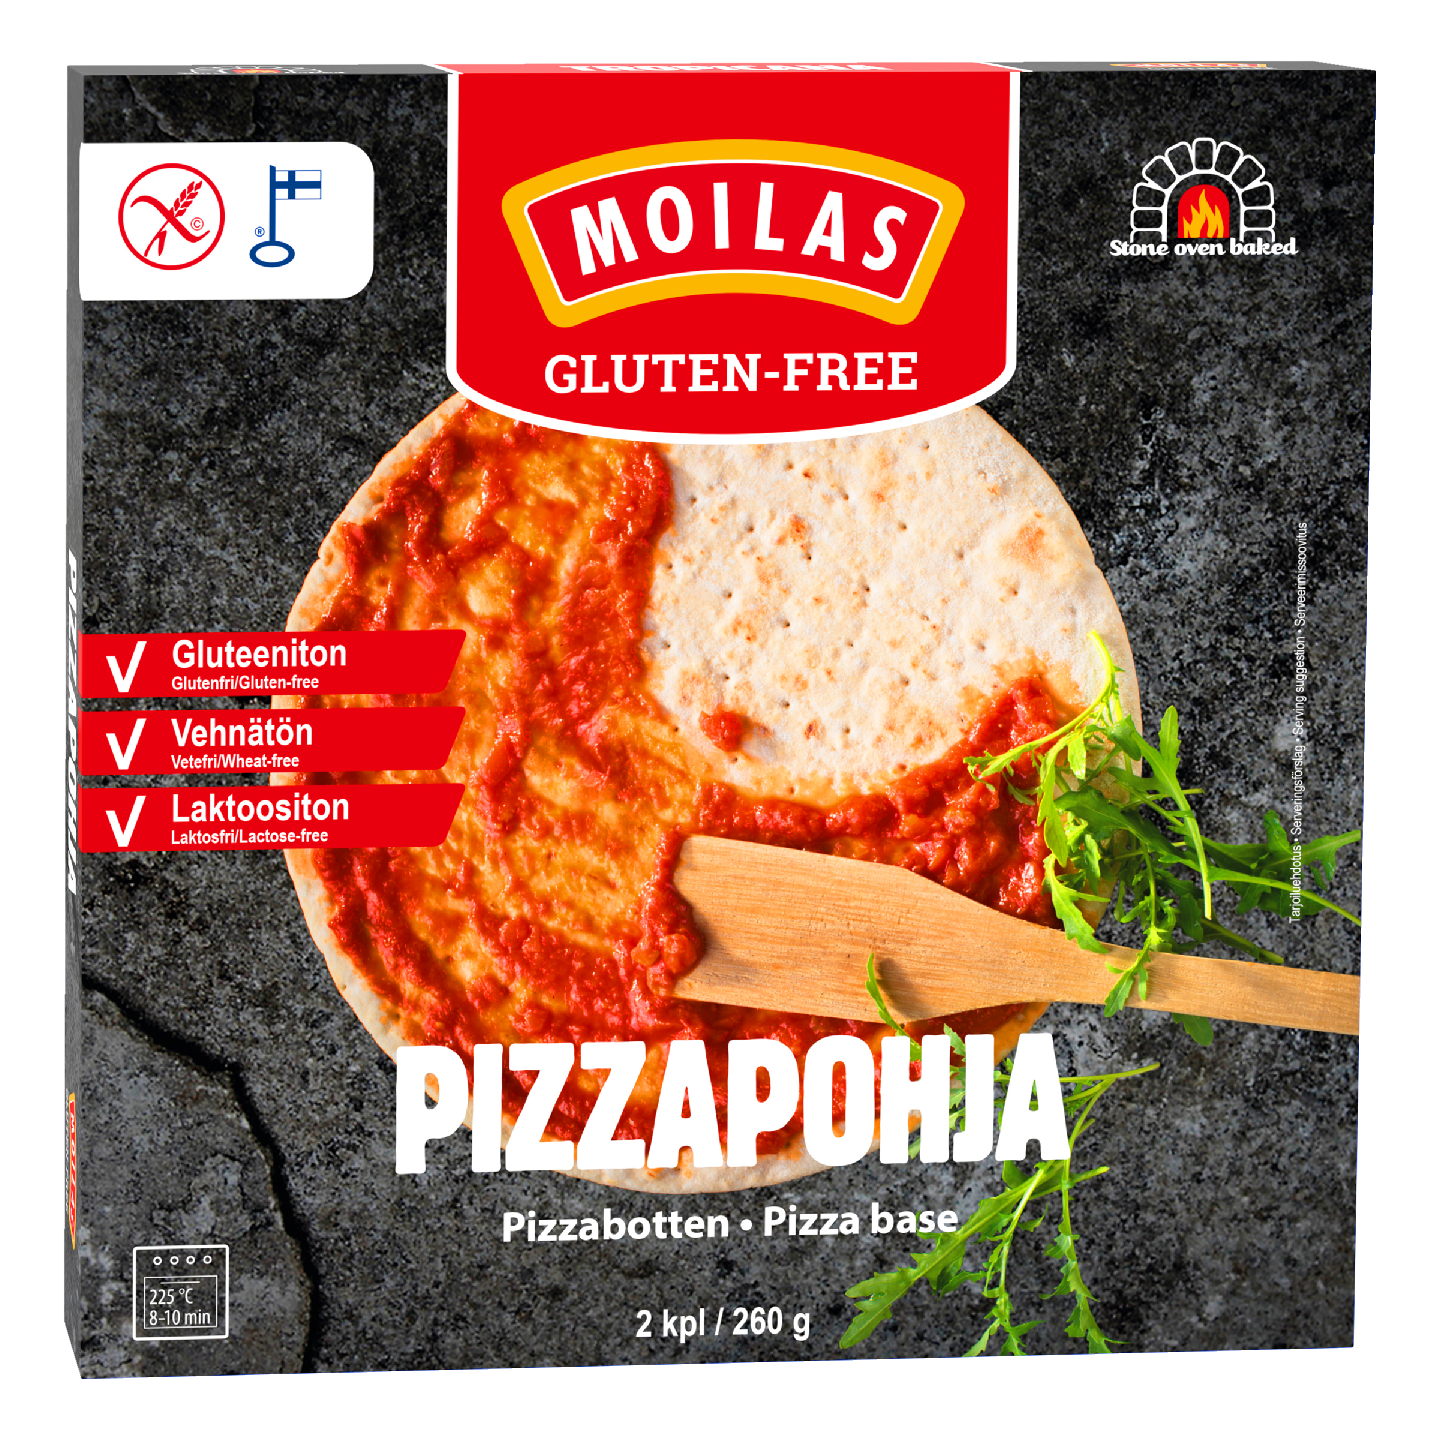 Moilas pizzapohja 2kpl/260g gluteeniton pakaste